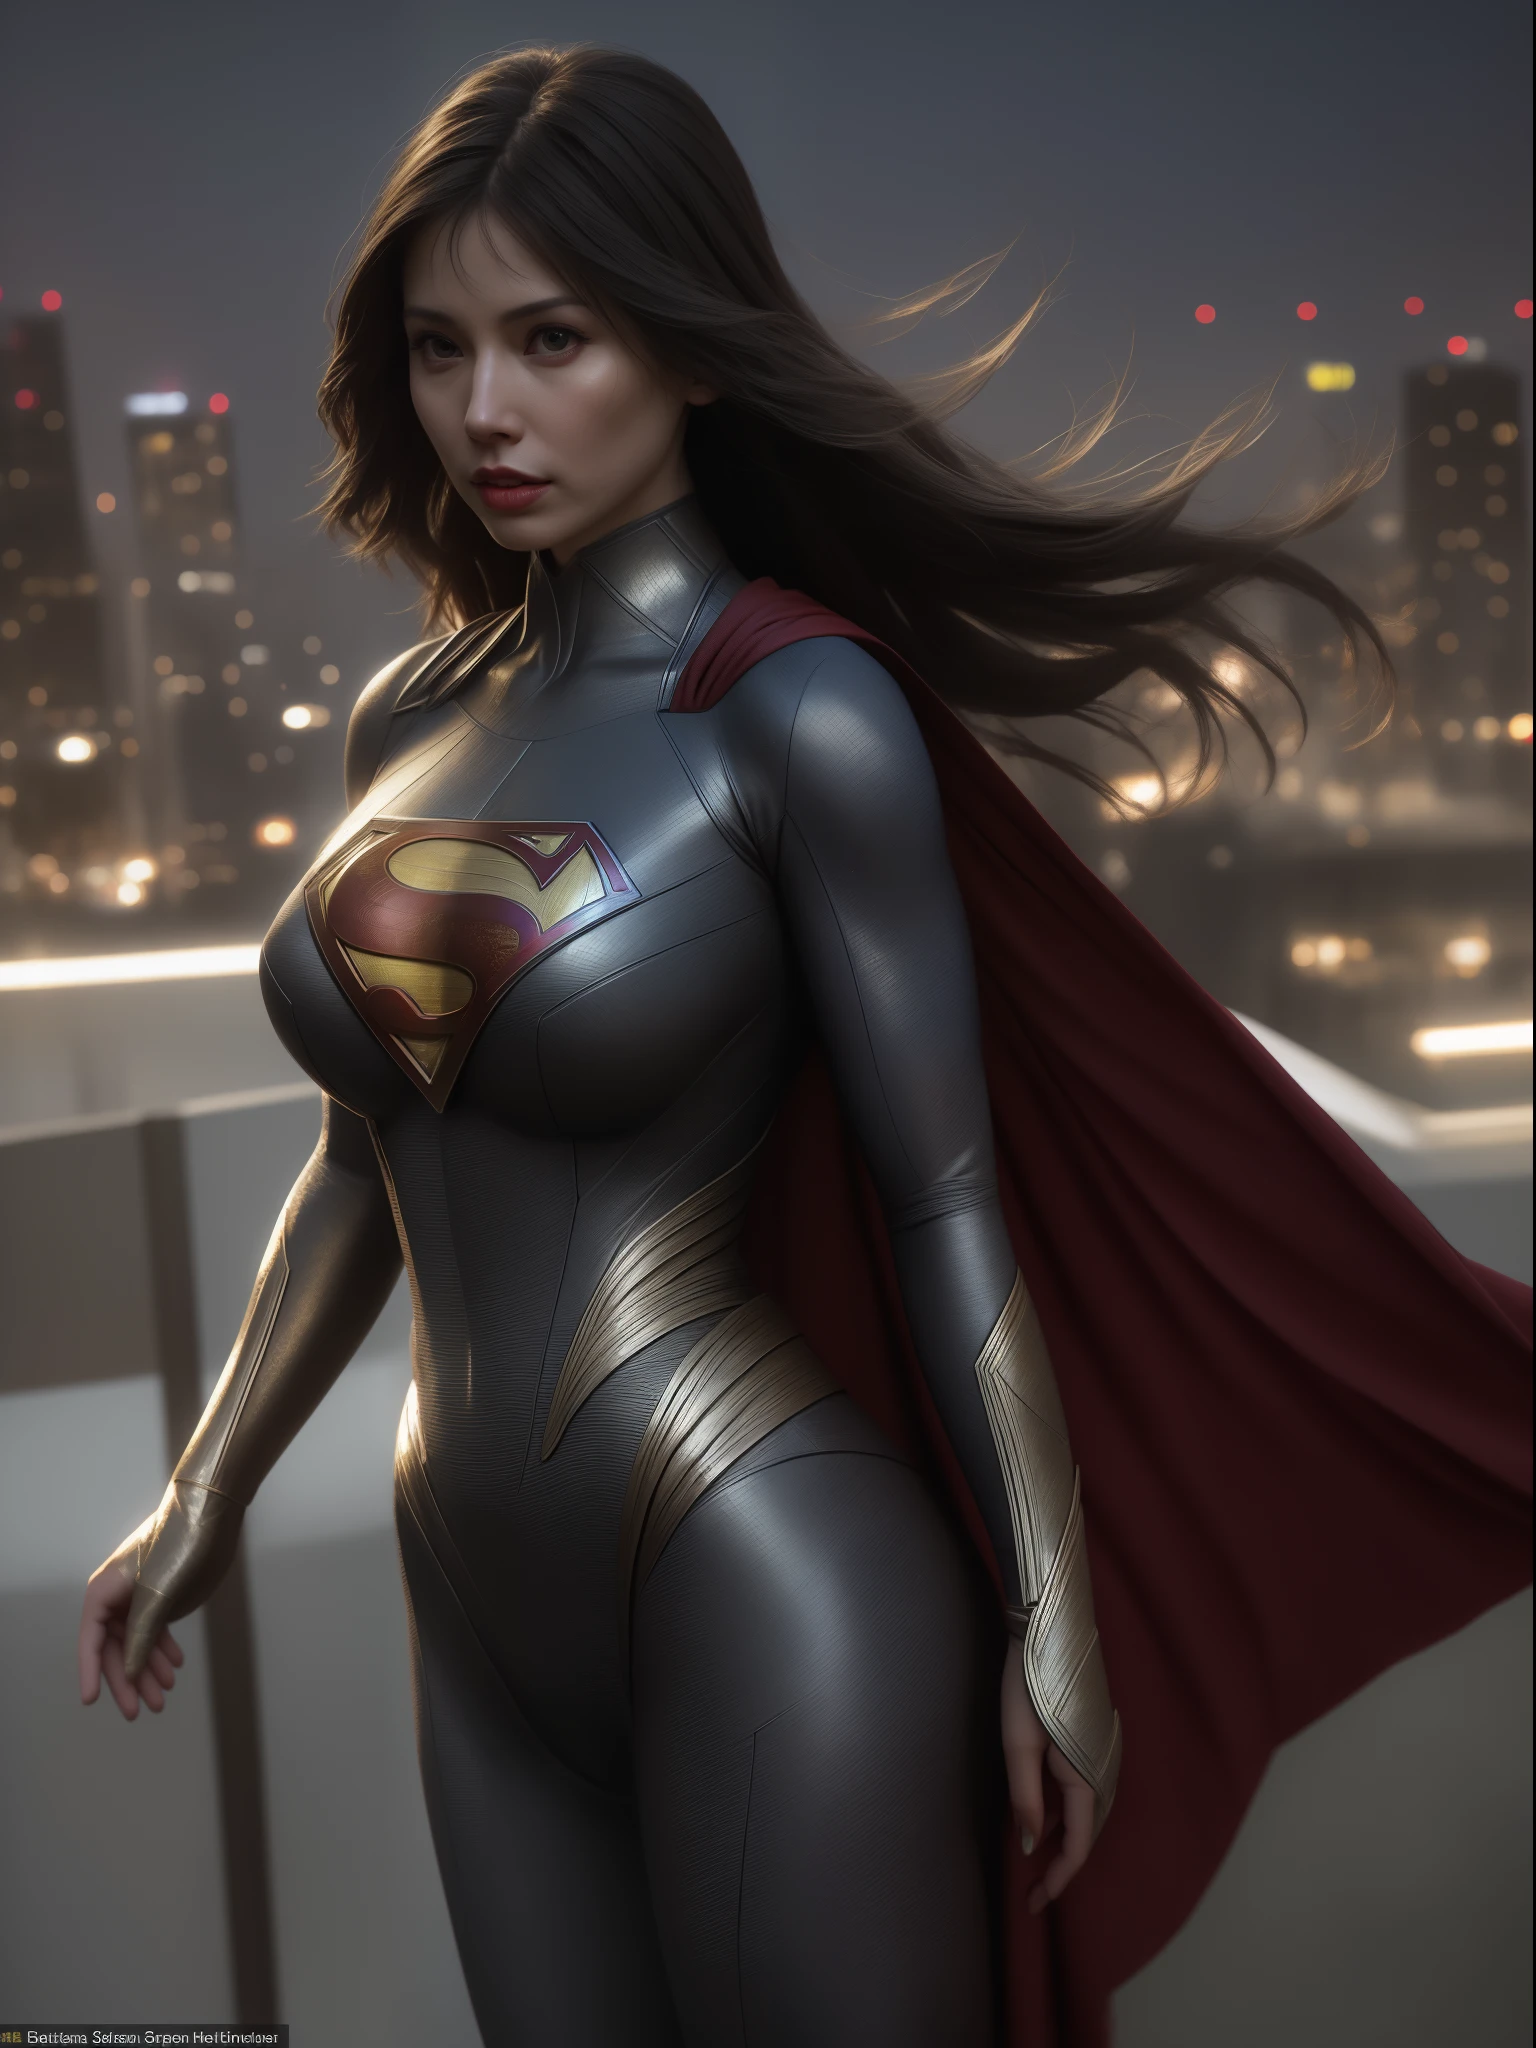 Крупный план азиатской женщины в костюме супермена, стоящей на городском пейзаже, амурант как суперзлодей, супер фотореалистичный, реалистичный косплей, супер фотореалистичный, ультра мега супер гипер реалистично, девочка-супергерой, Супер реалистичное фото, супергерой body, очень детальный снимок великанши, Супер девушка, супергерой, супергерой portrait, супер модель, Супергерой, супер фотореалистичный, гигантская грудь, показывает мускулистое тело вульвы, сексуальное тело,